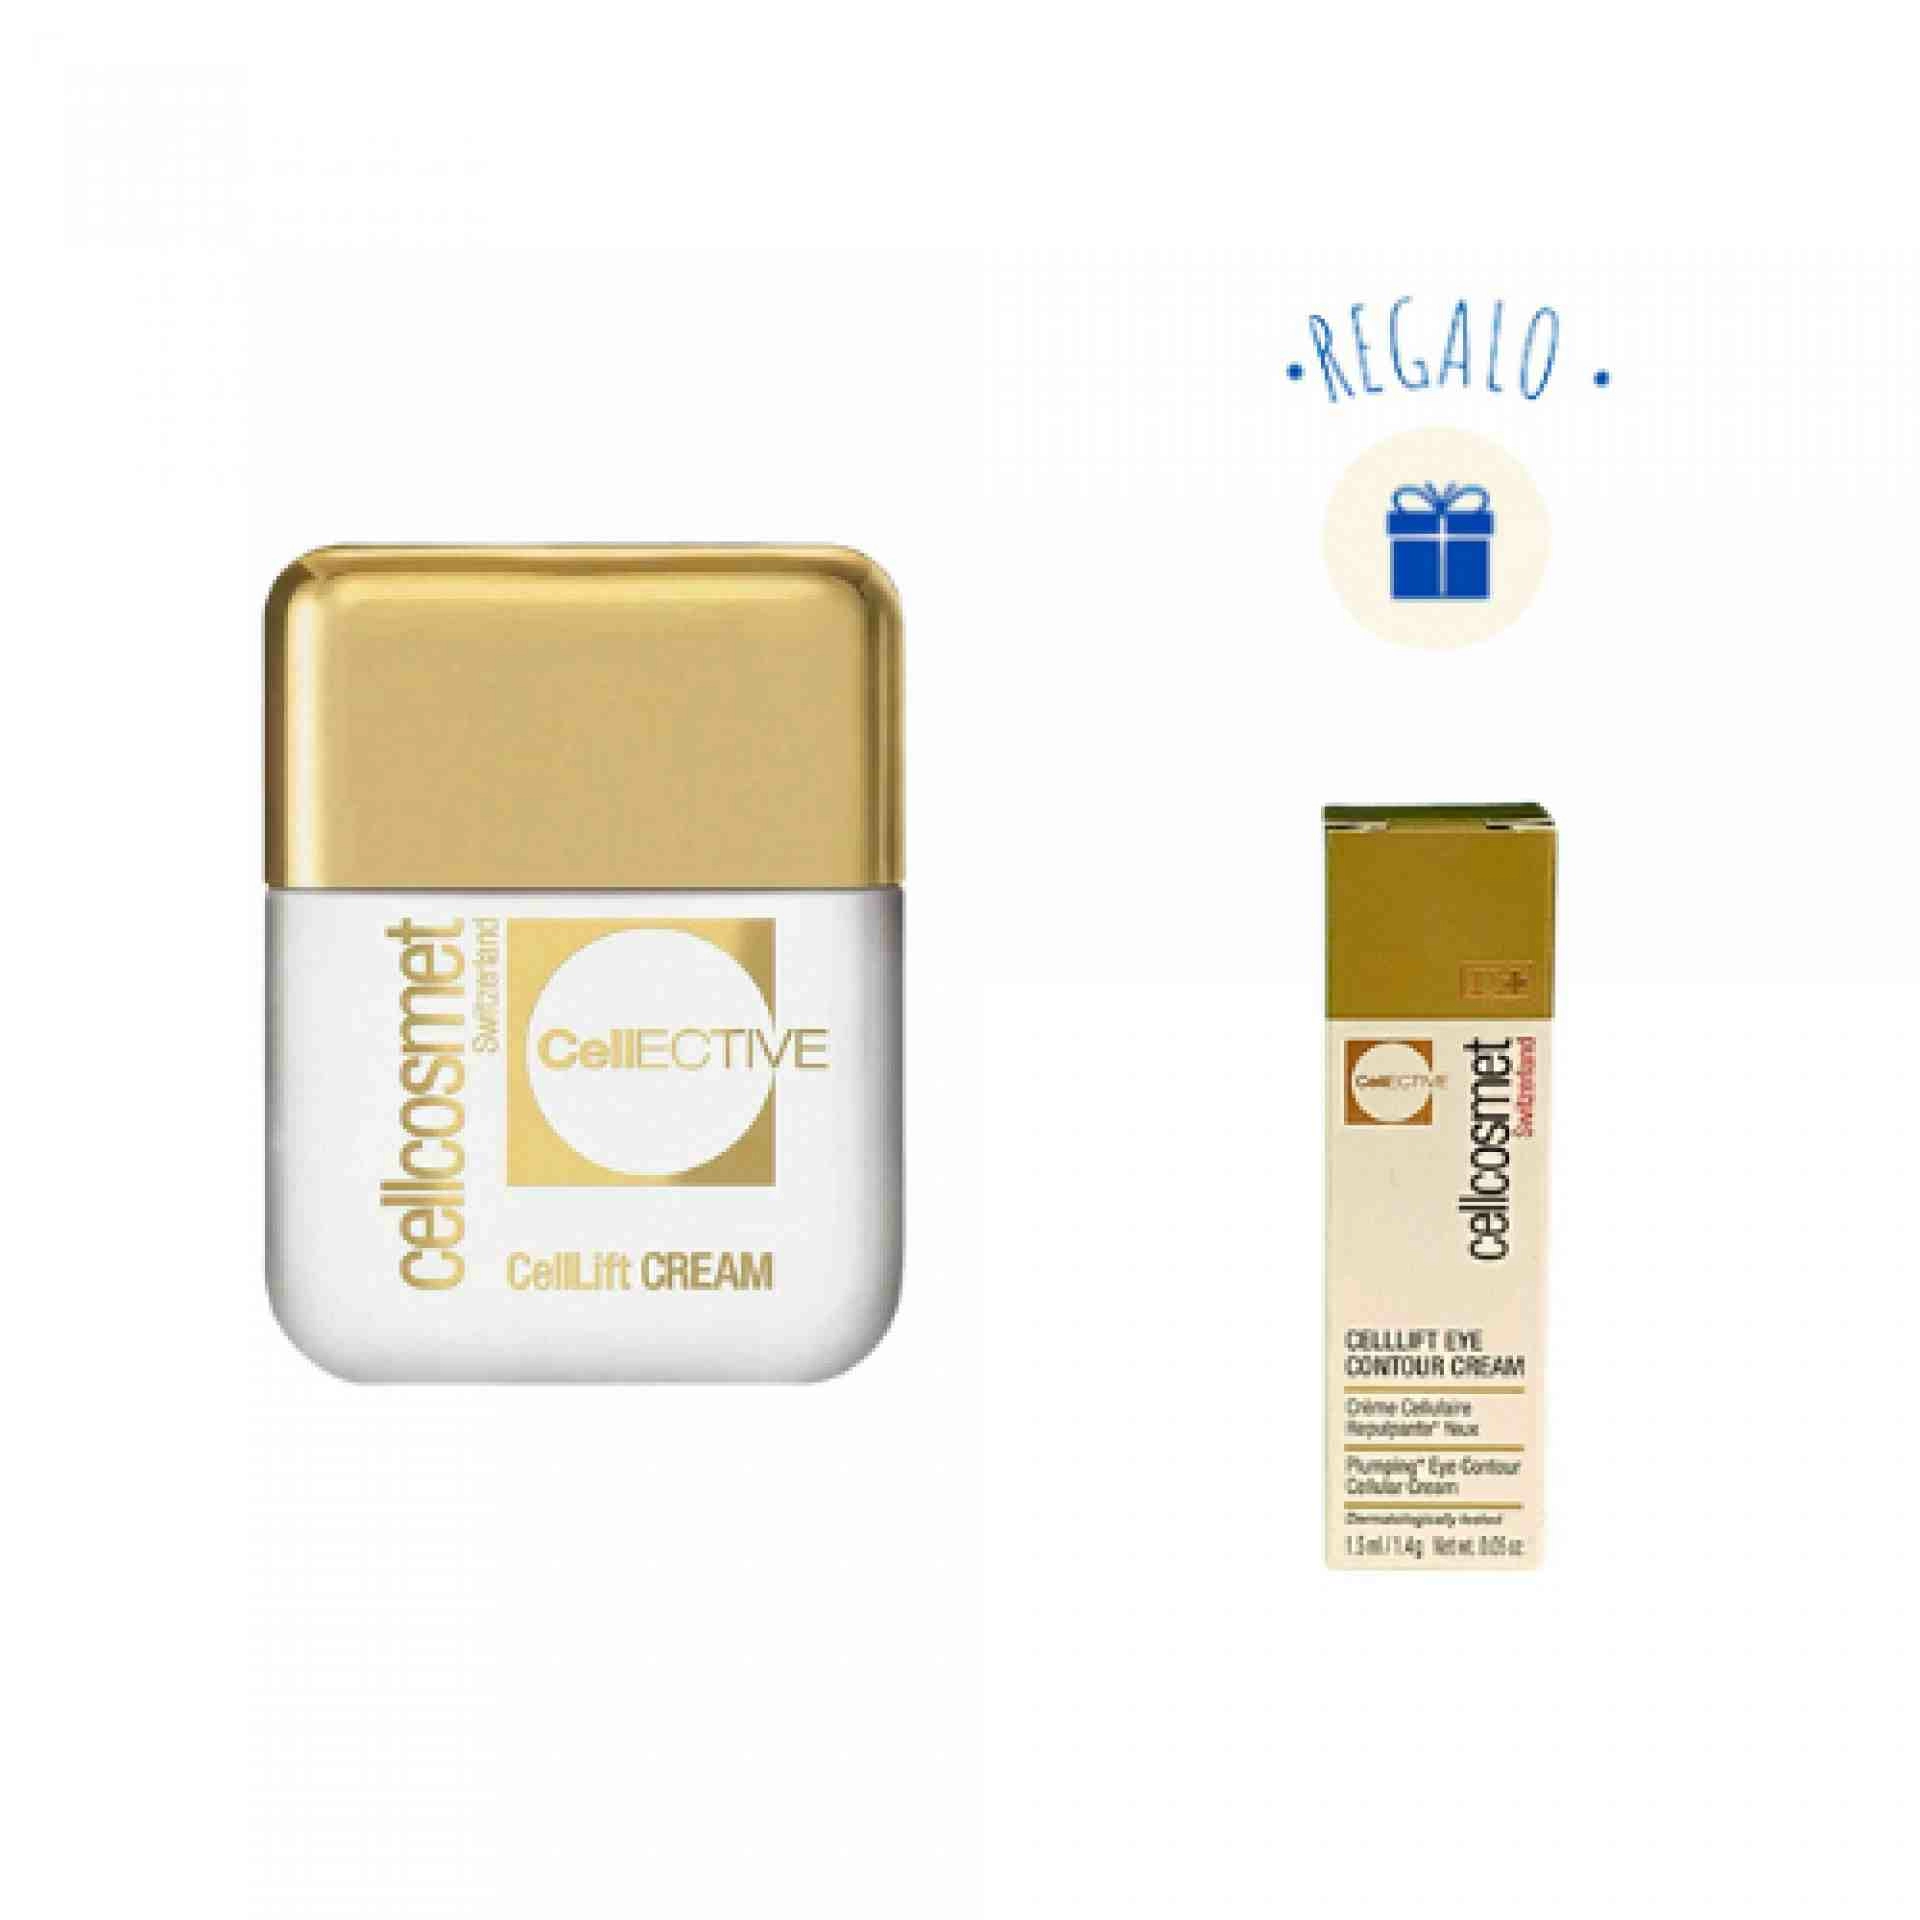 CellEctive CellLift Cream 50ml + Minitalla CellLift Eye Contour 1,5ml - Cellcosmet ®